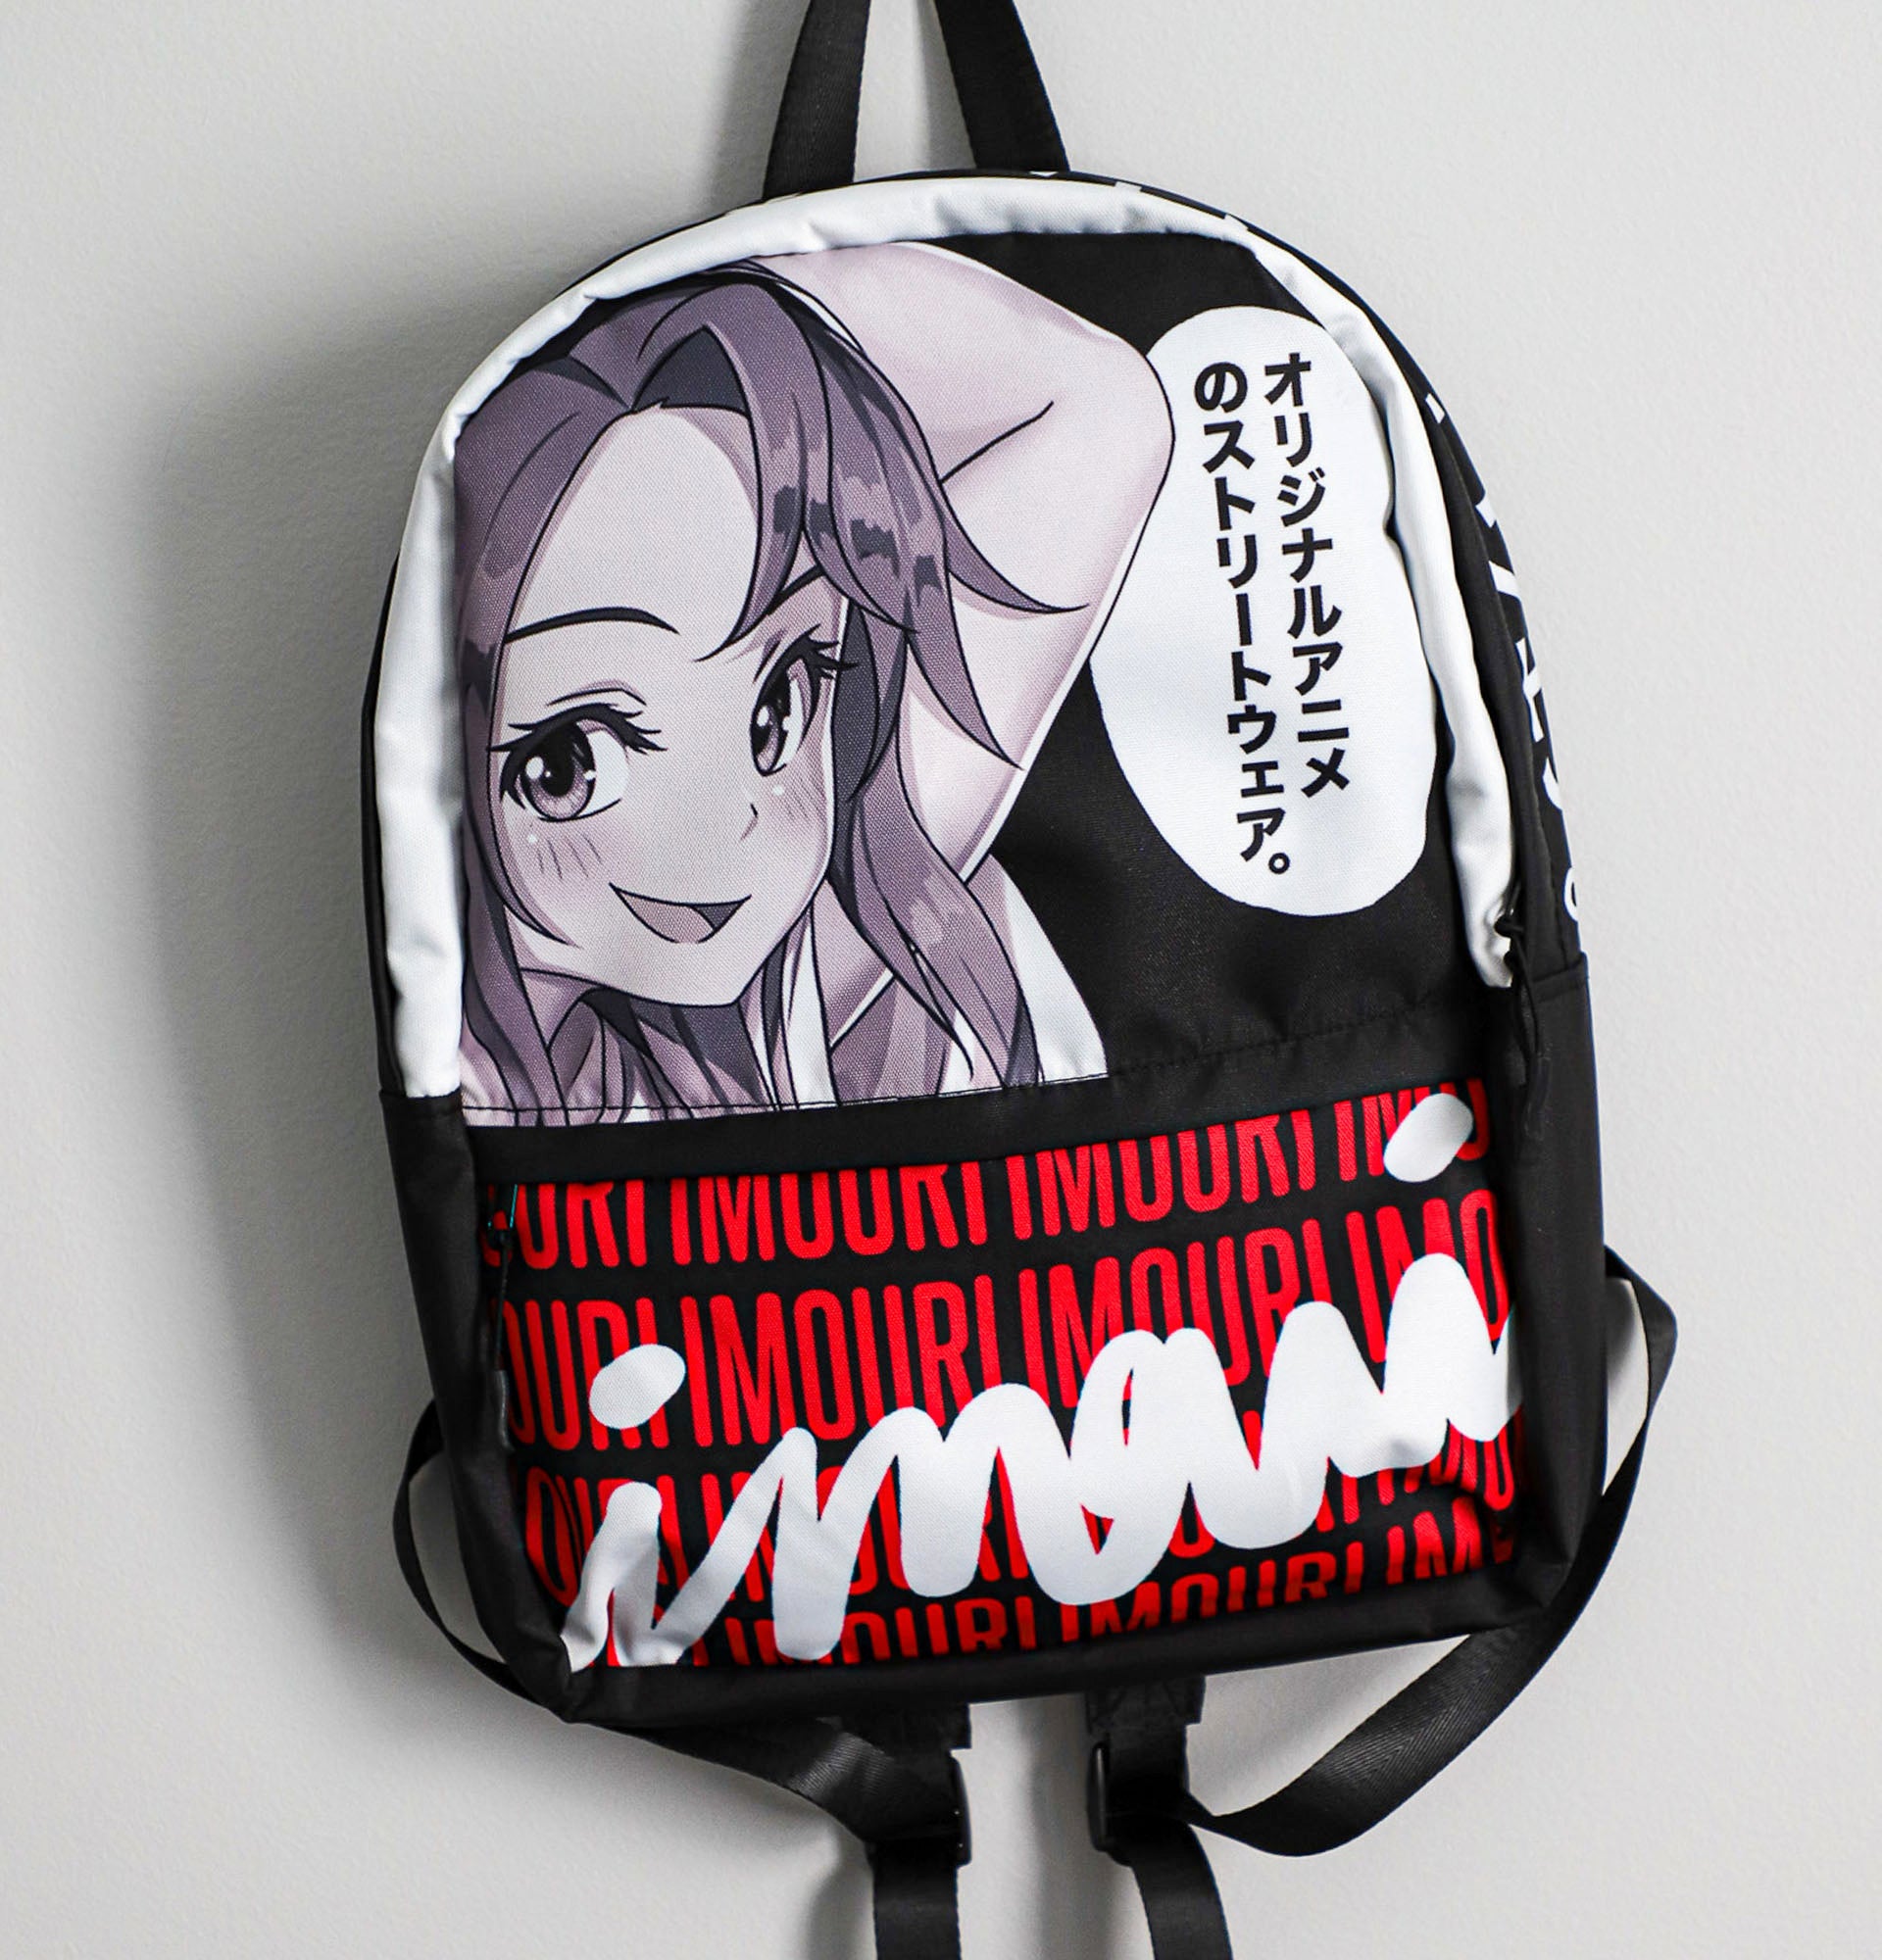 Imouri Anime Japanese Bags & Backpacks